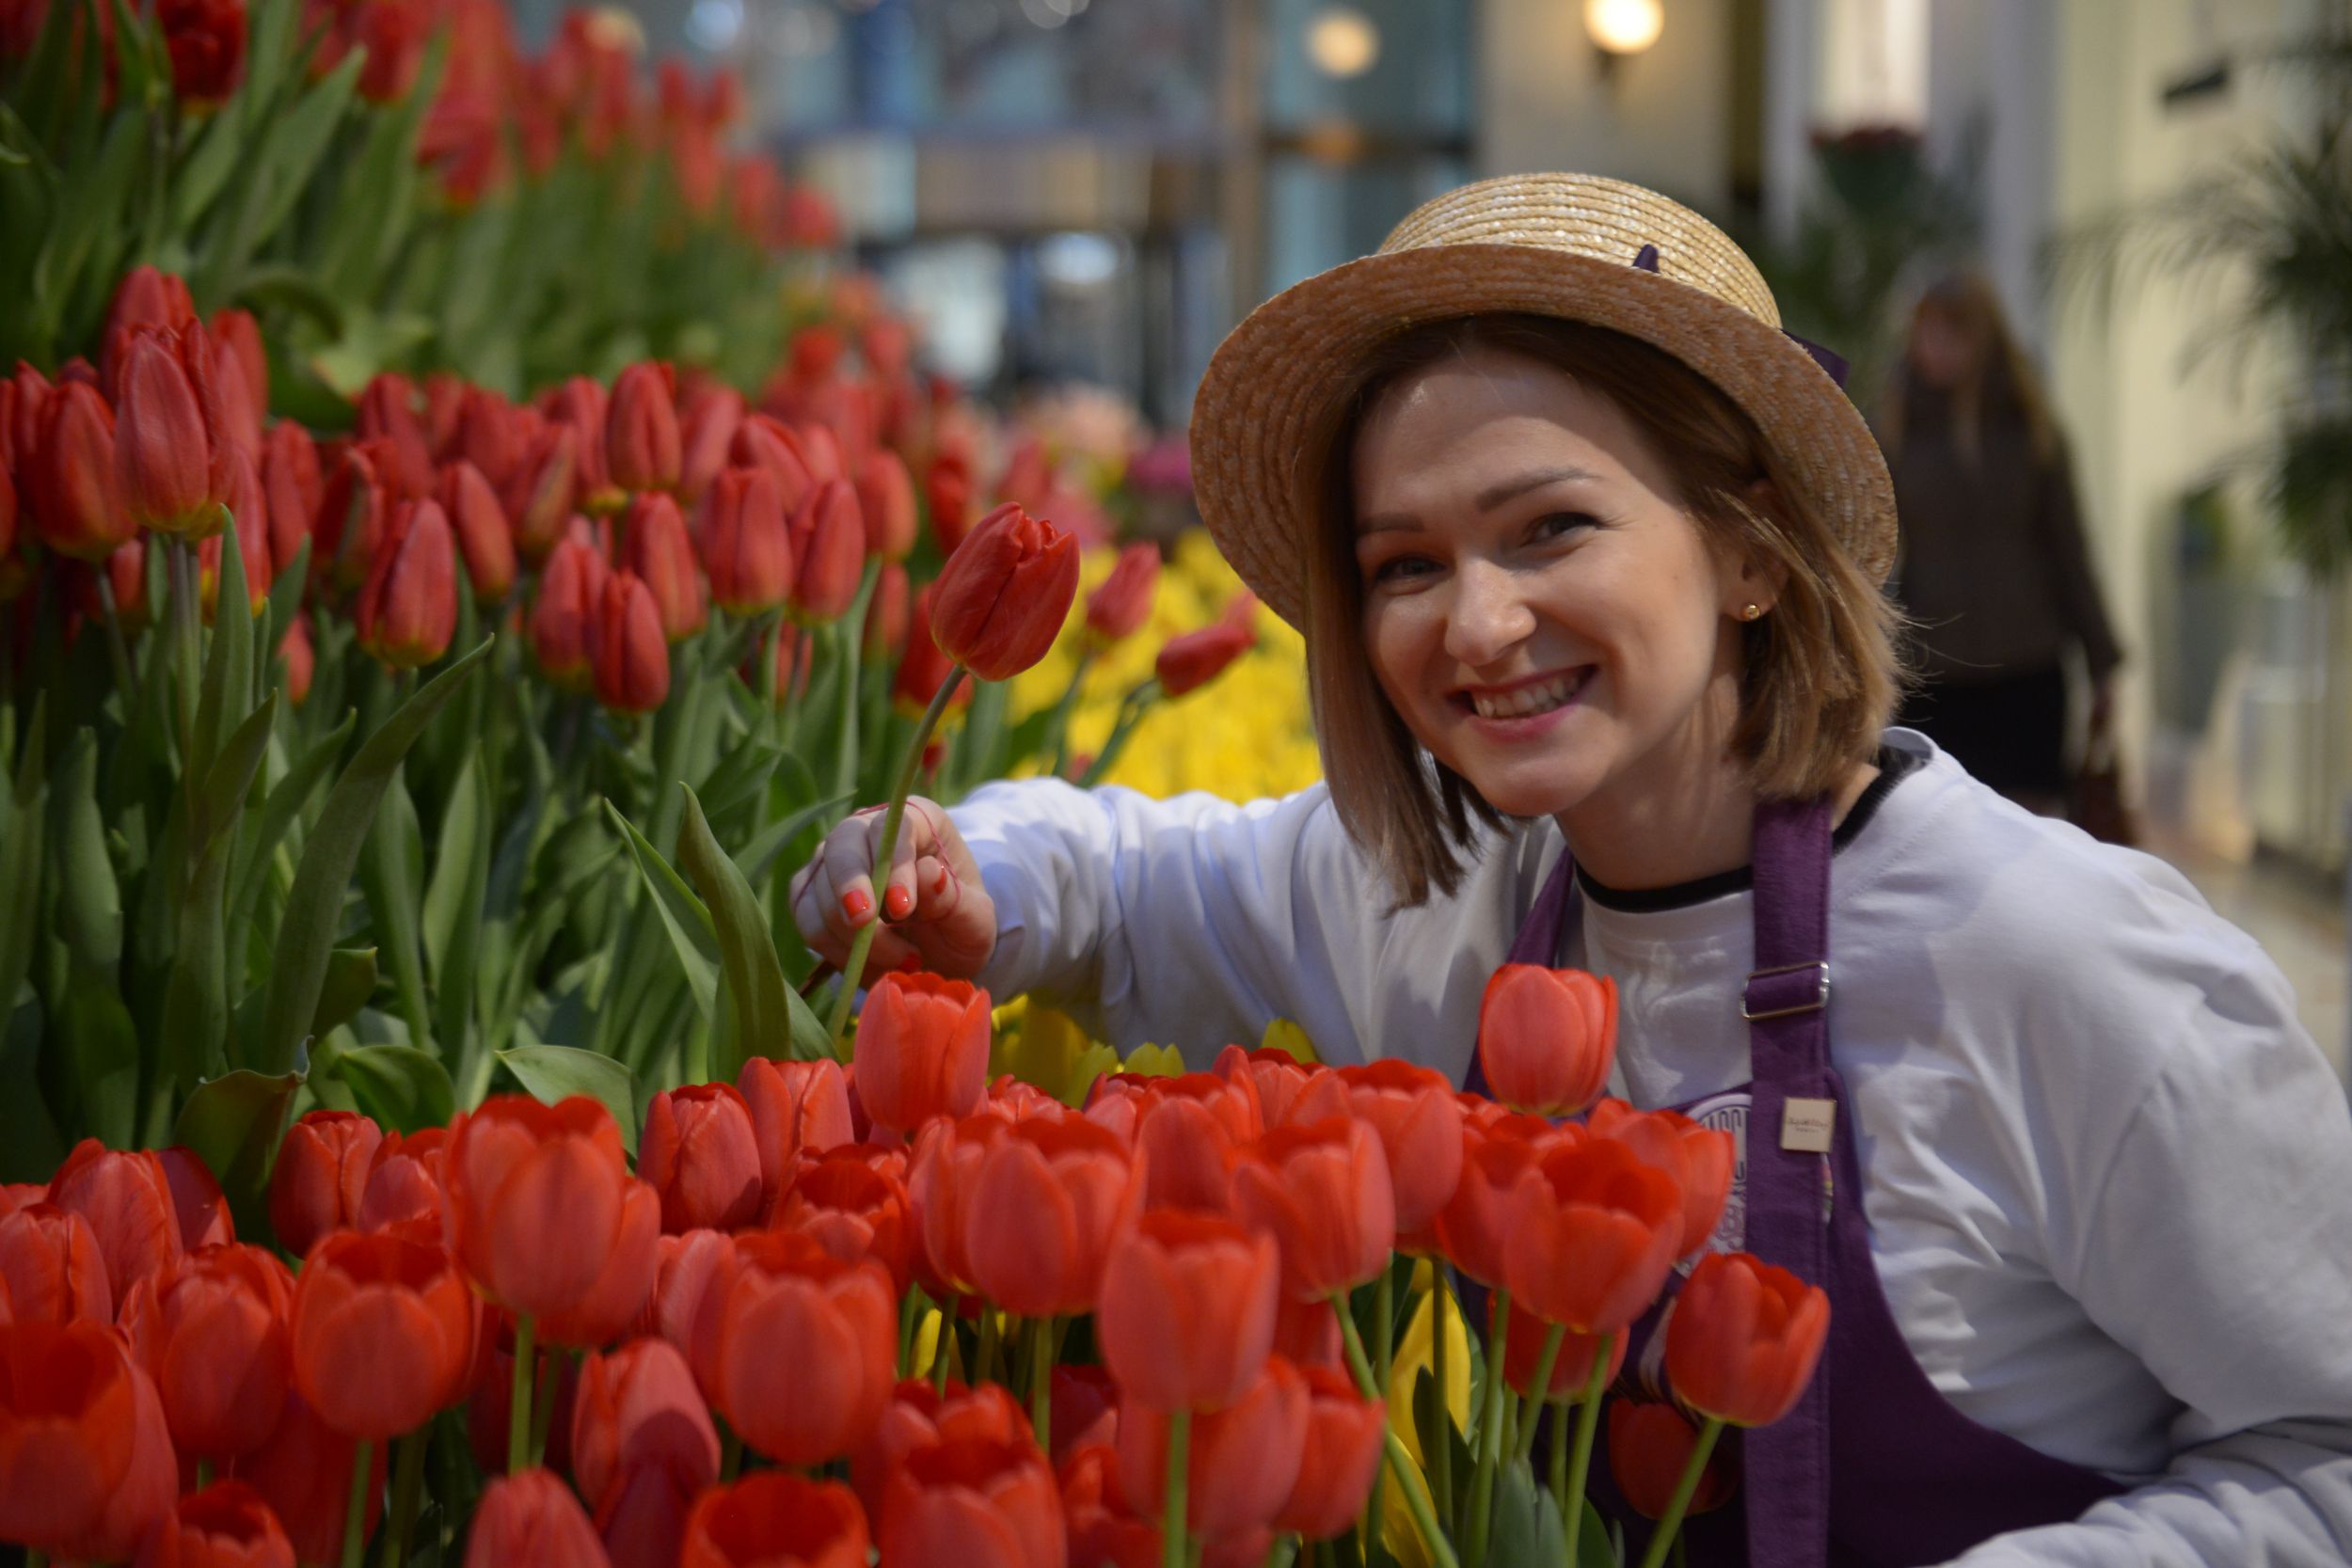 Фото с тюльпанами на улице. Человек тюльпан. Фотосессия с тюльпанами. Женщина продает цветы. Девушка с тюльпанами.